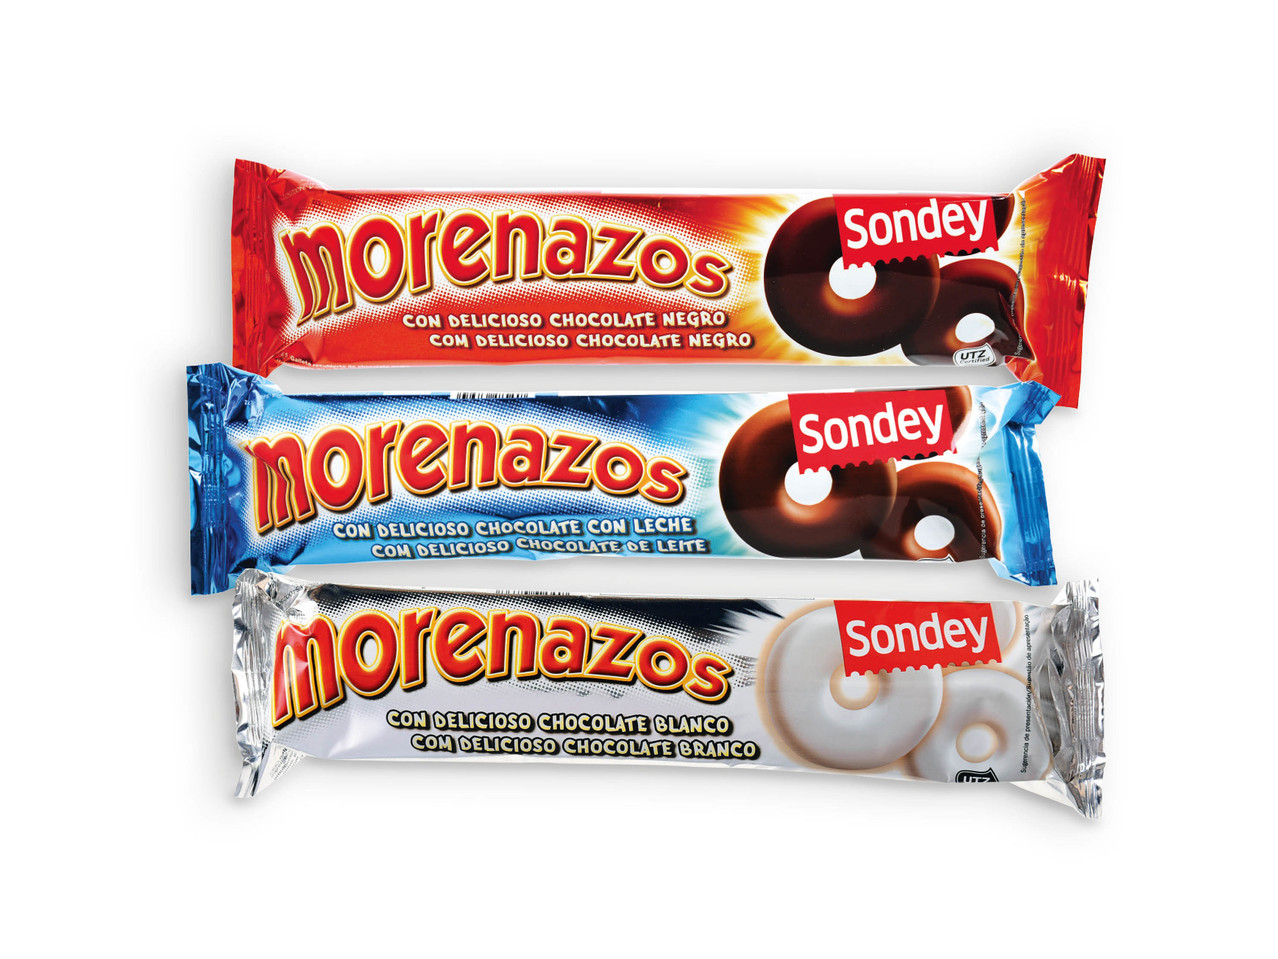 SONDEY(R) Morenazos